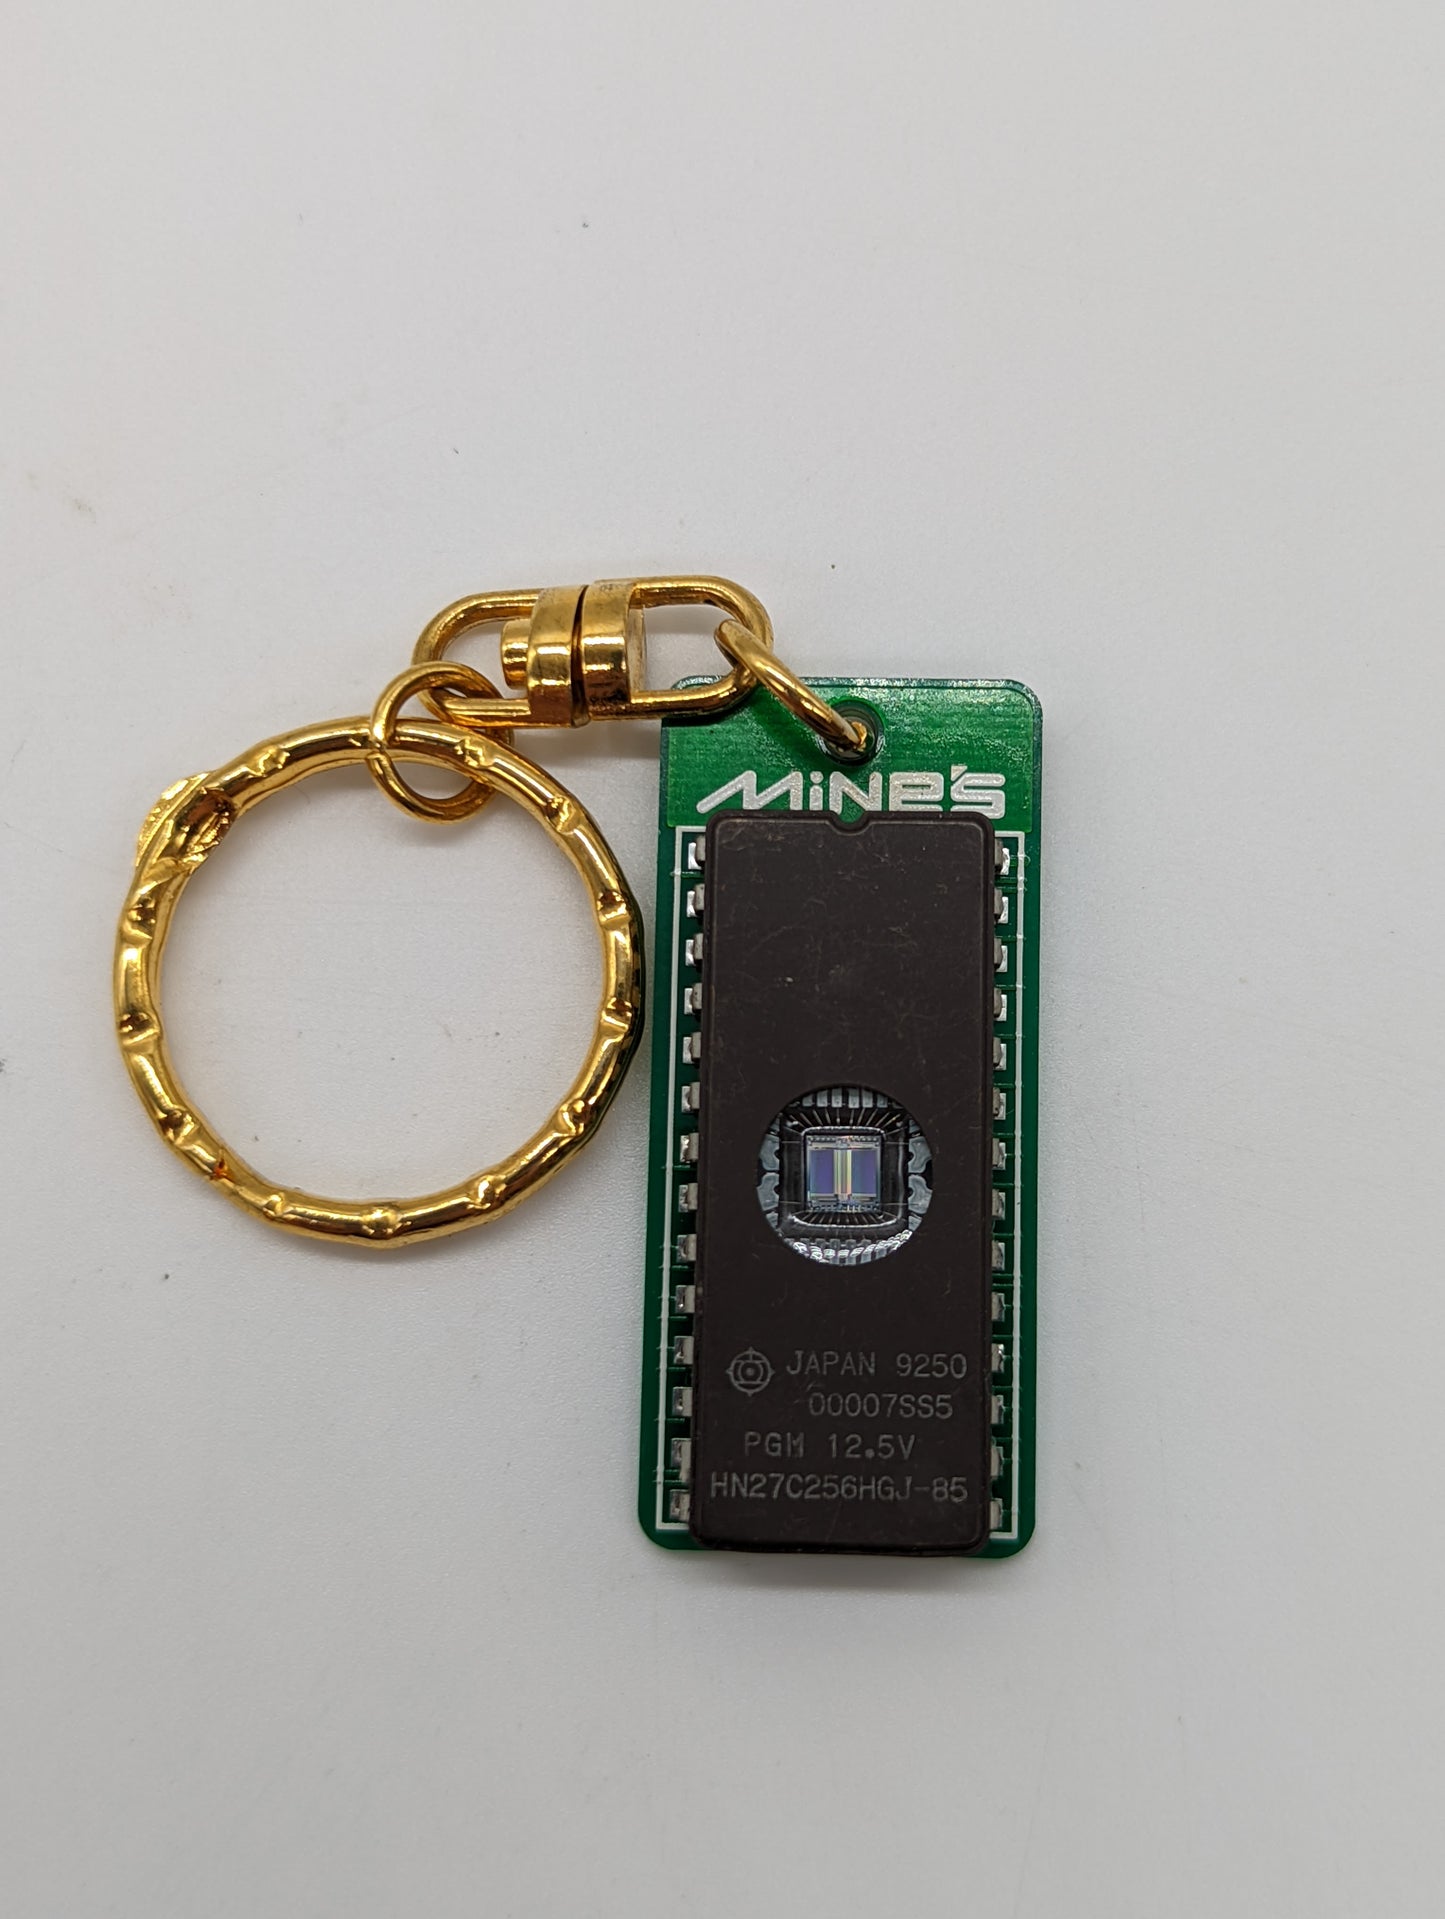 Mine's VX-rom keychain